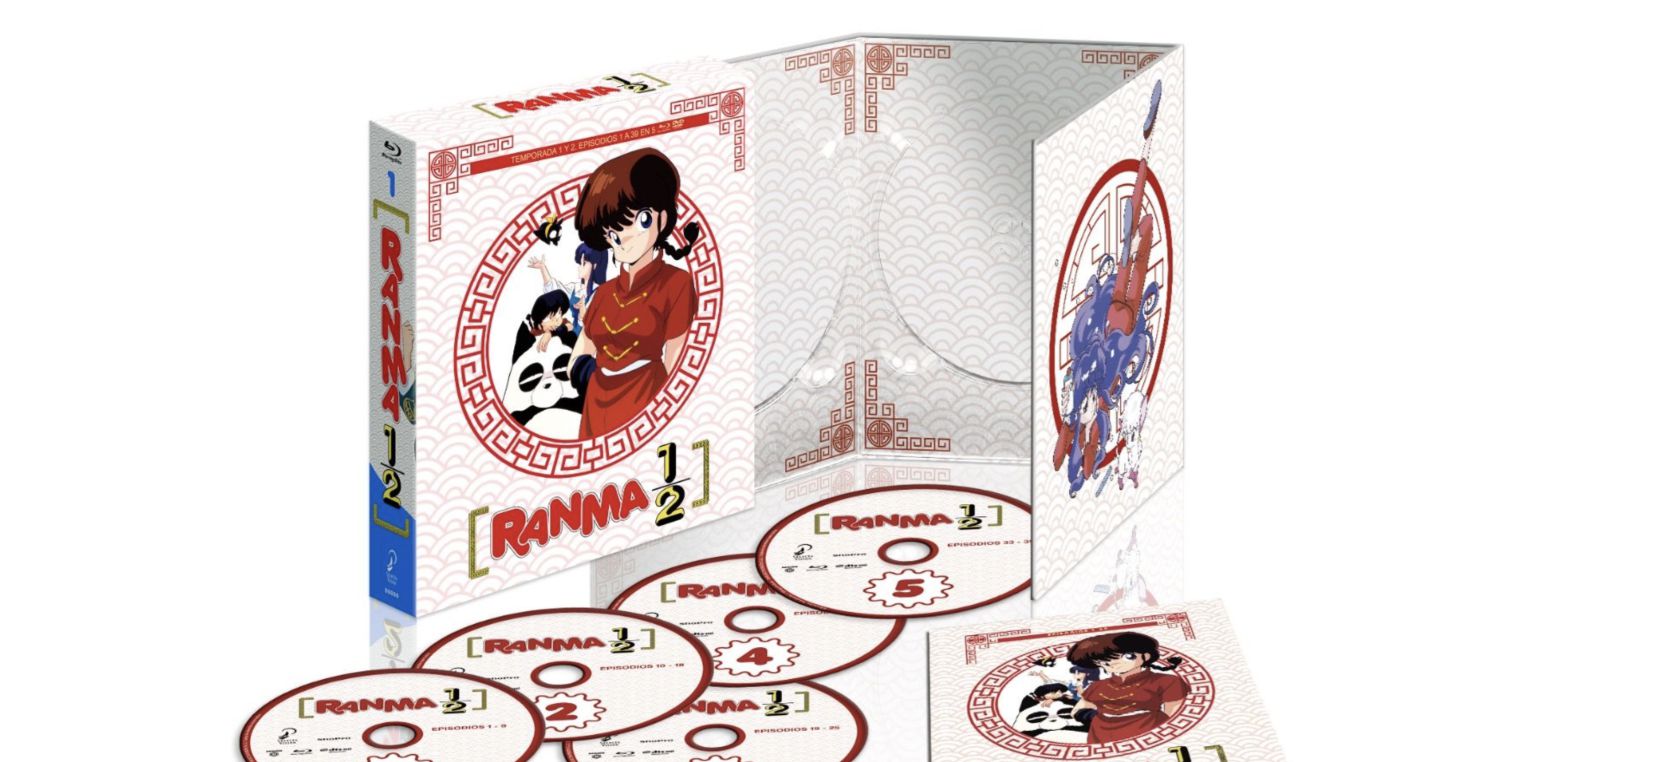 Ranma ½ saldrá a la venta el 3 de Septiembre